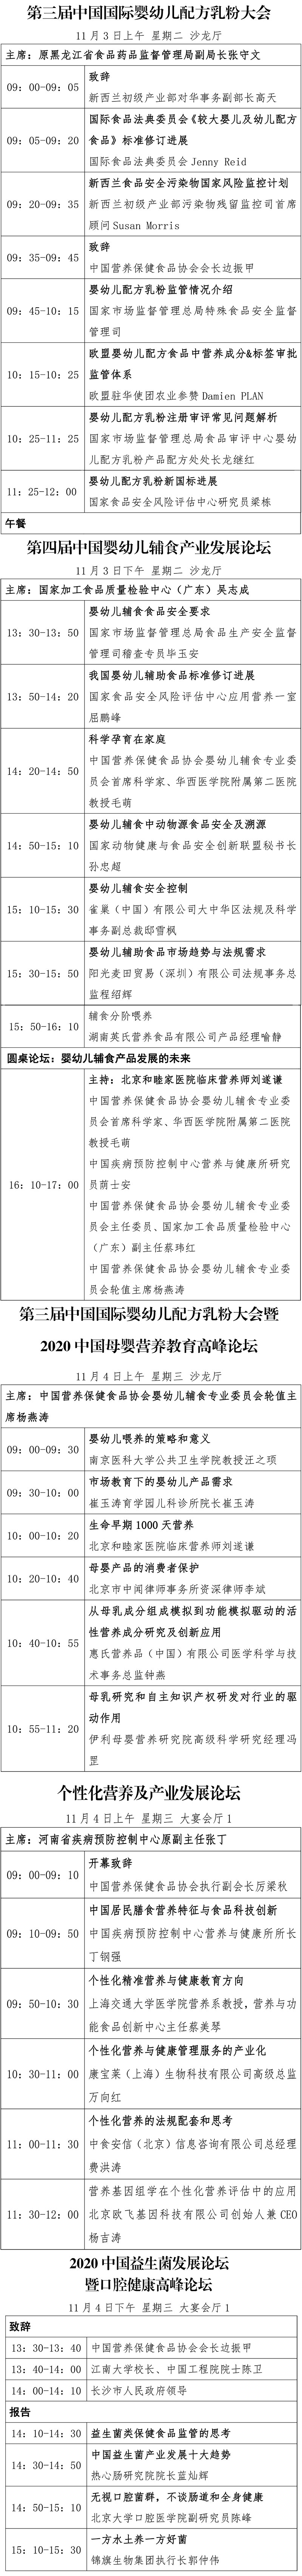 2020中国特殊食品大会日程定稿版10_03